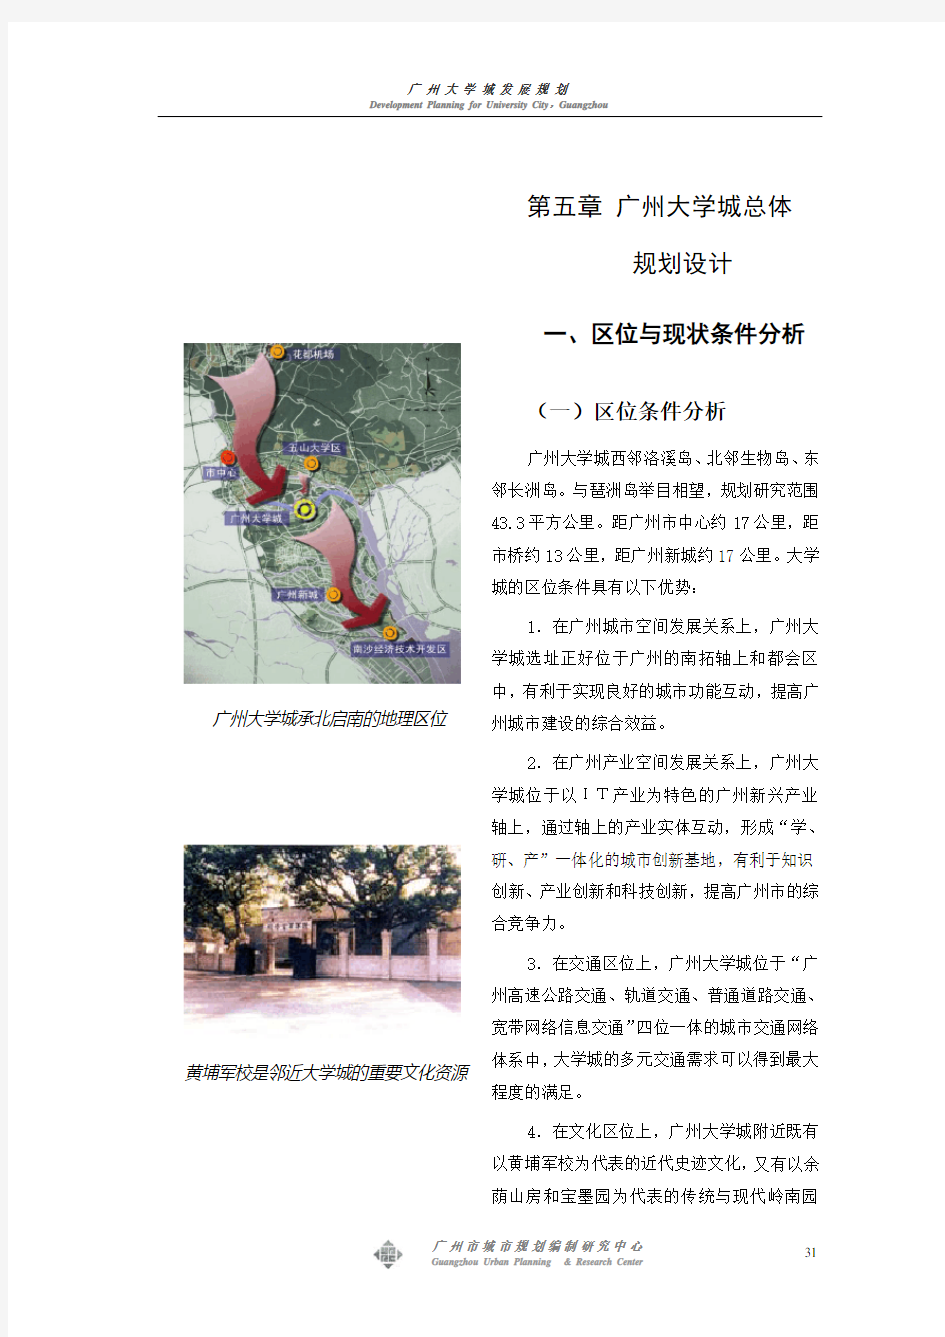 第五章 广州大学城总体规划设计修改稿